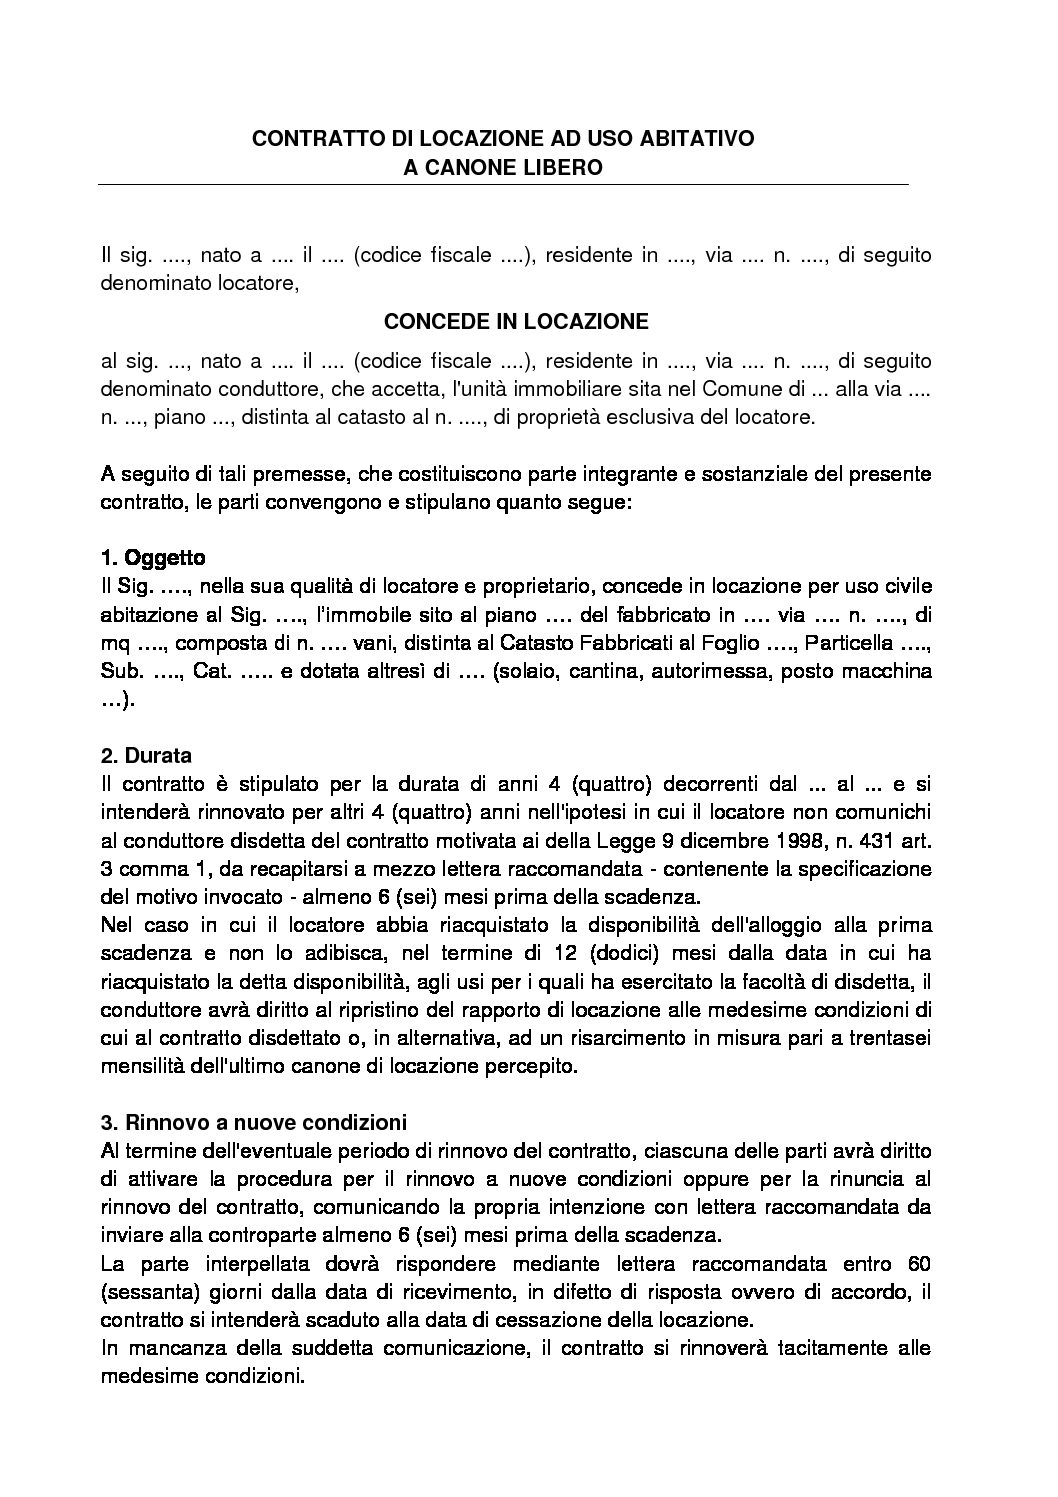 Uniaffitti_Contratto_Locazione_Canone_Libero